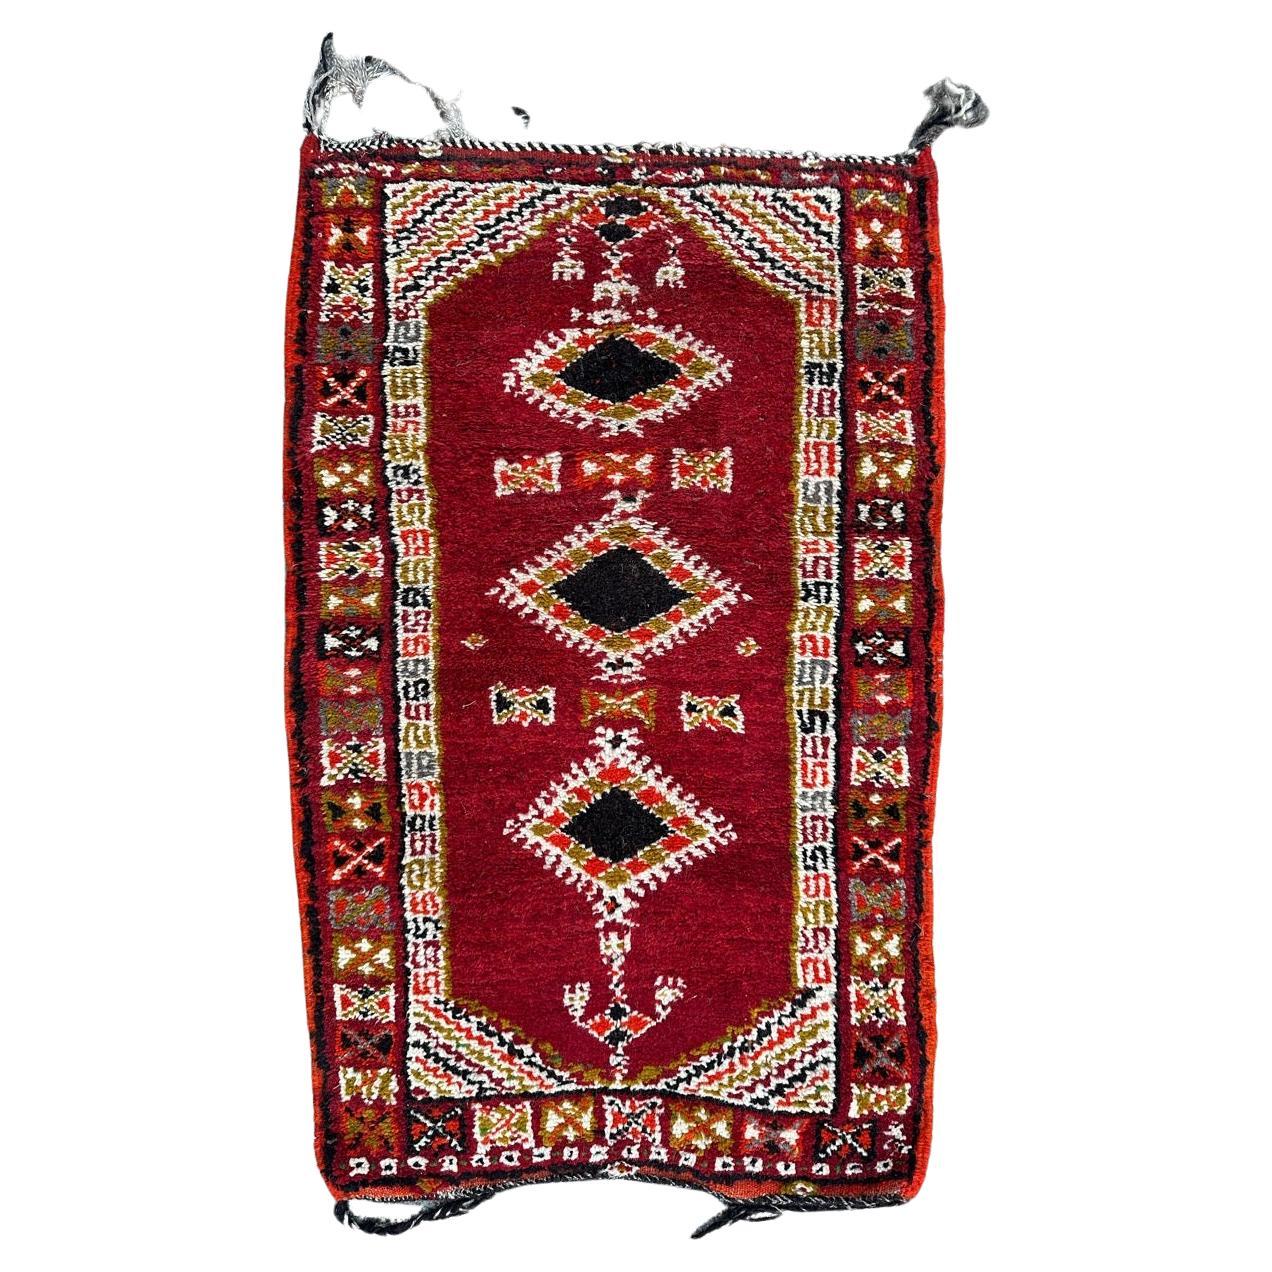 Le joli tapis marocain tribal vintage de Bobyrug 